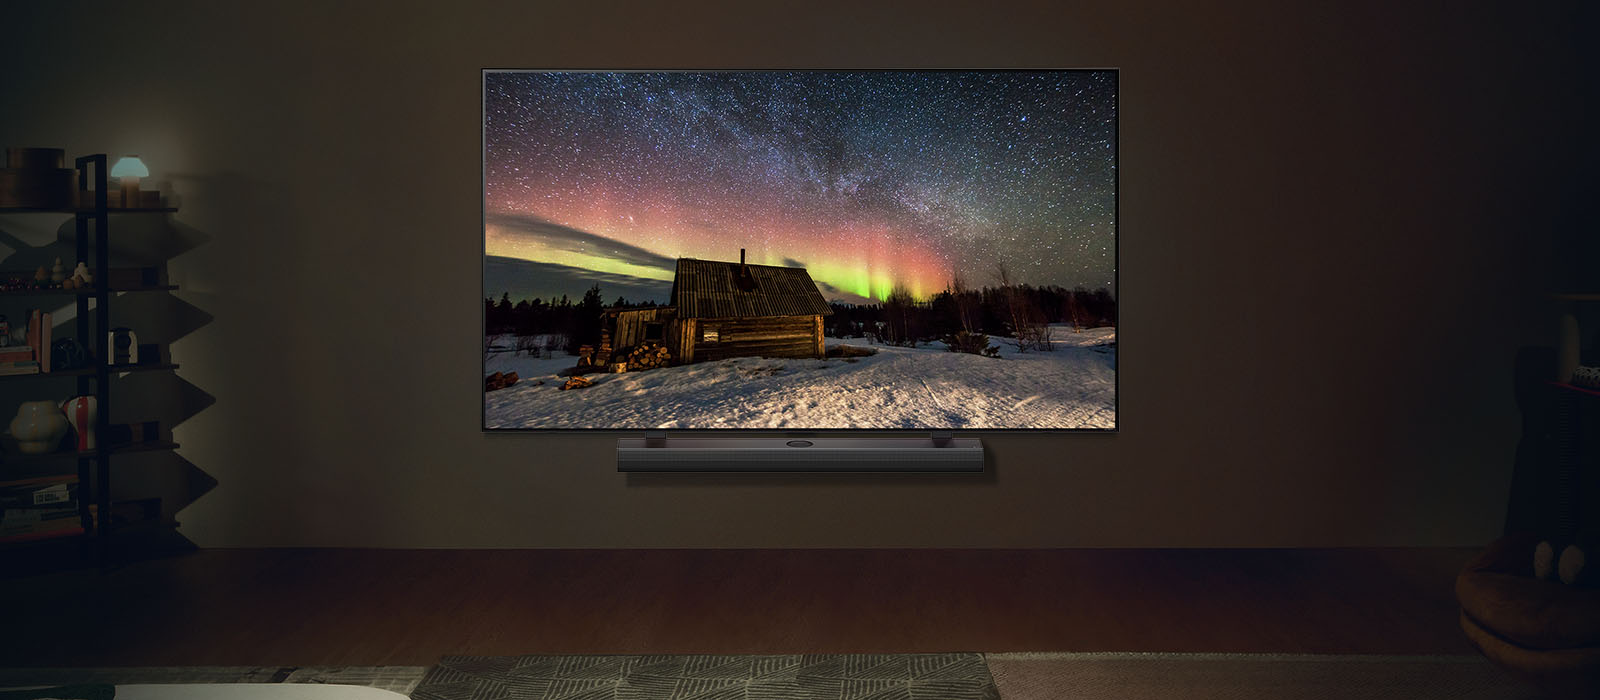 Телевизор LG и звуковая панель LG Soundbar в современном жилом пространстве в ночное время. Северное сияние отображается на экране с идеальным уровнем яркости.